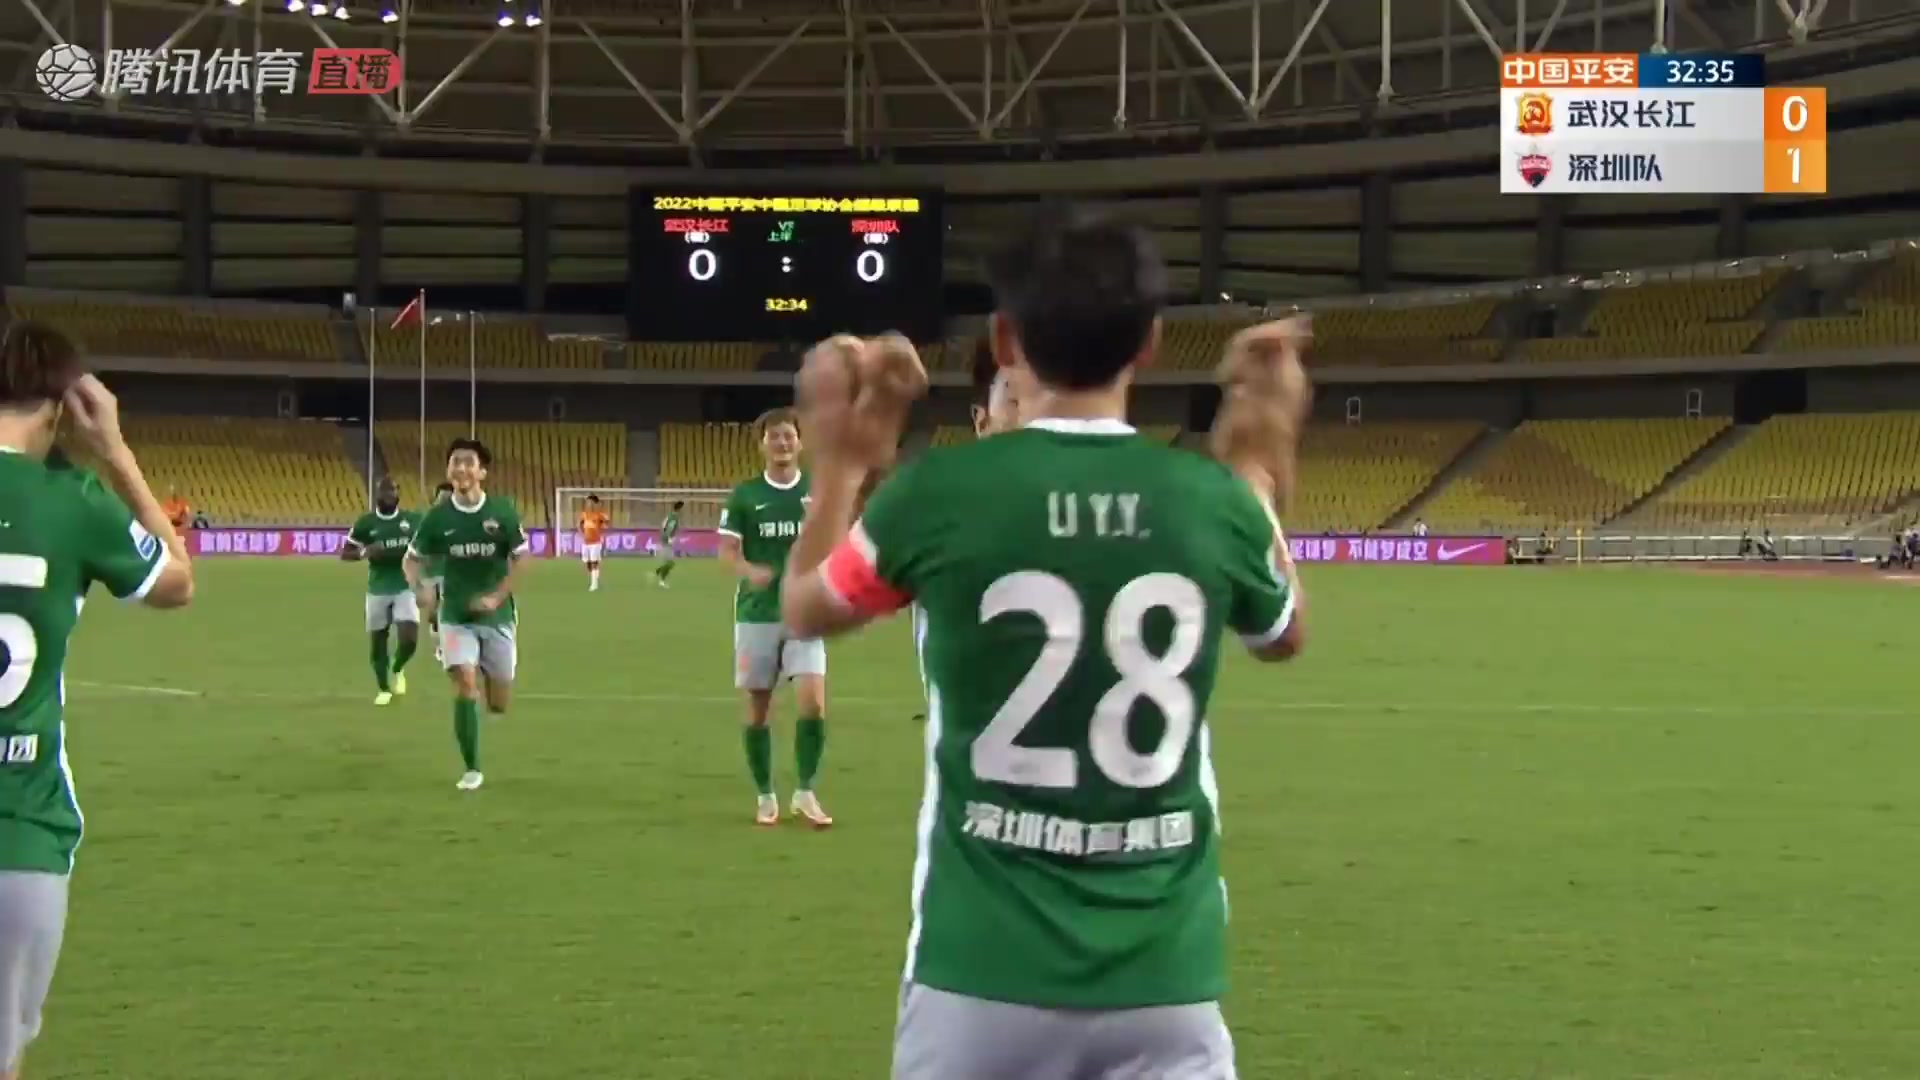 CHA CSL Wuhan FC Vs Shenzhen FC Yuanyi Li Goal in 32 min, Score 0:1